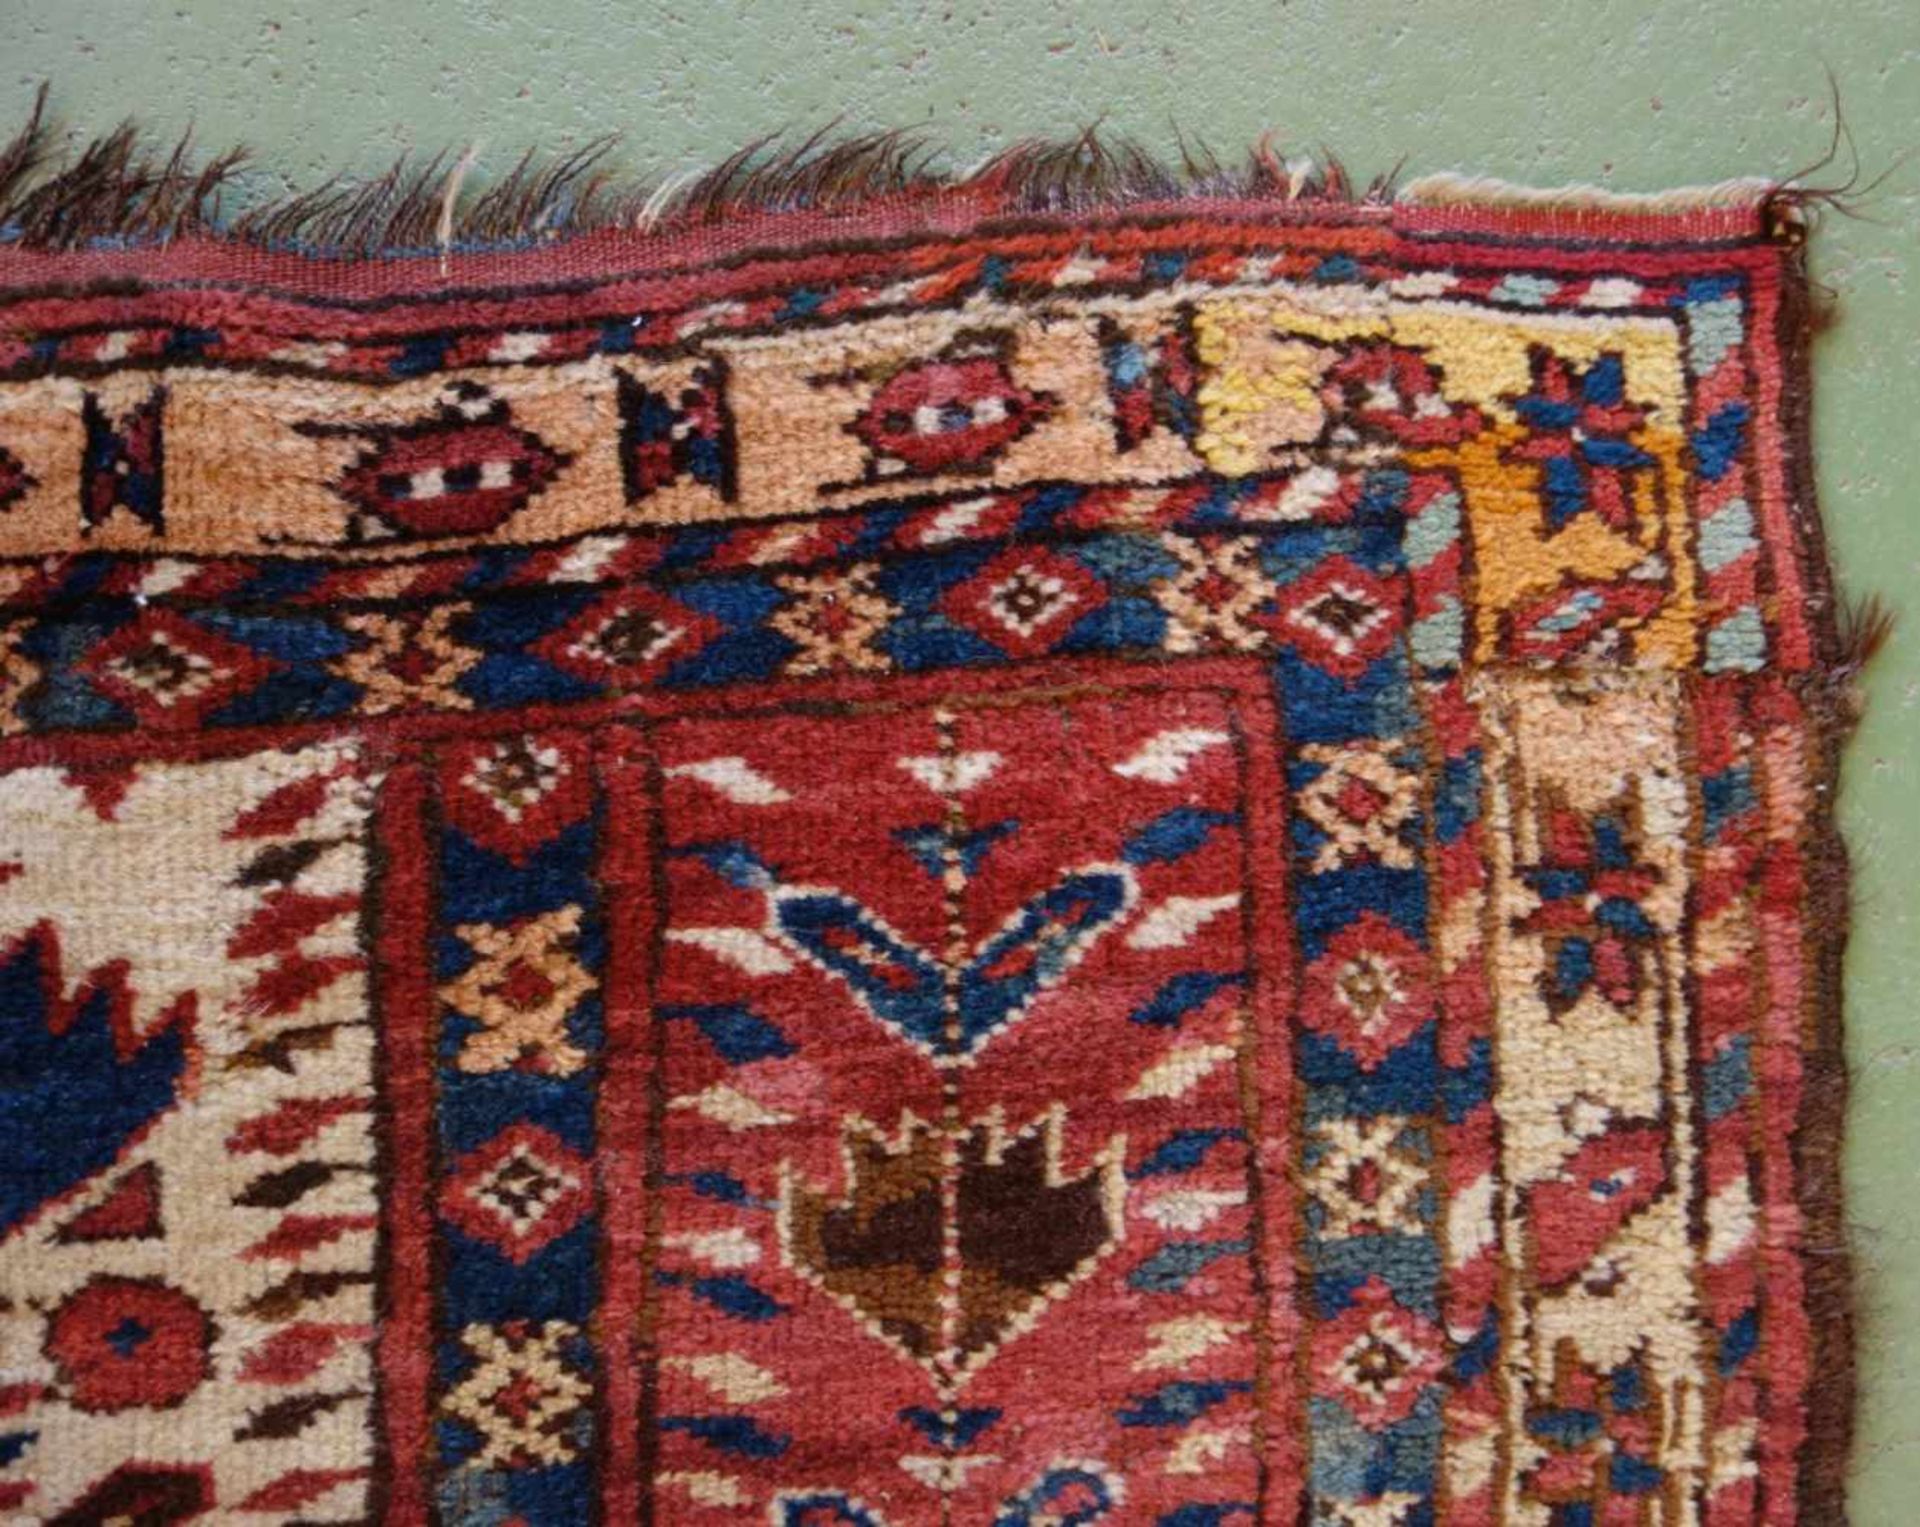 SCHMALER BESCHIR GEBETSTEPPICH / prayer rug, wohl 2. H. 19. Jh., Turkmenistan / Ersari-Beschir ( - Image 5 of 24